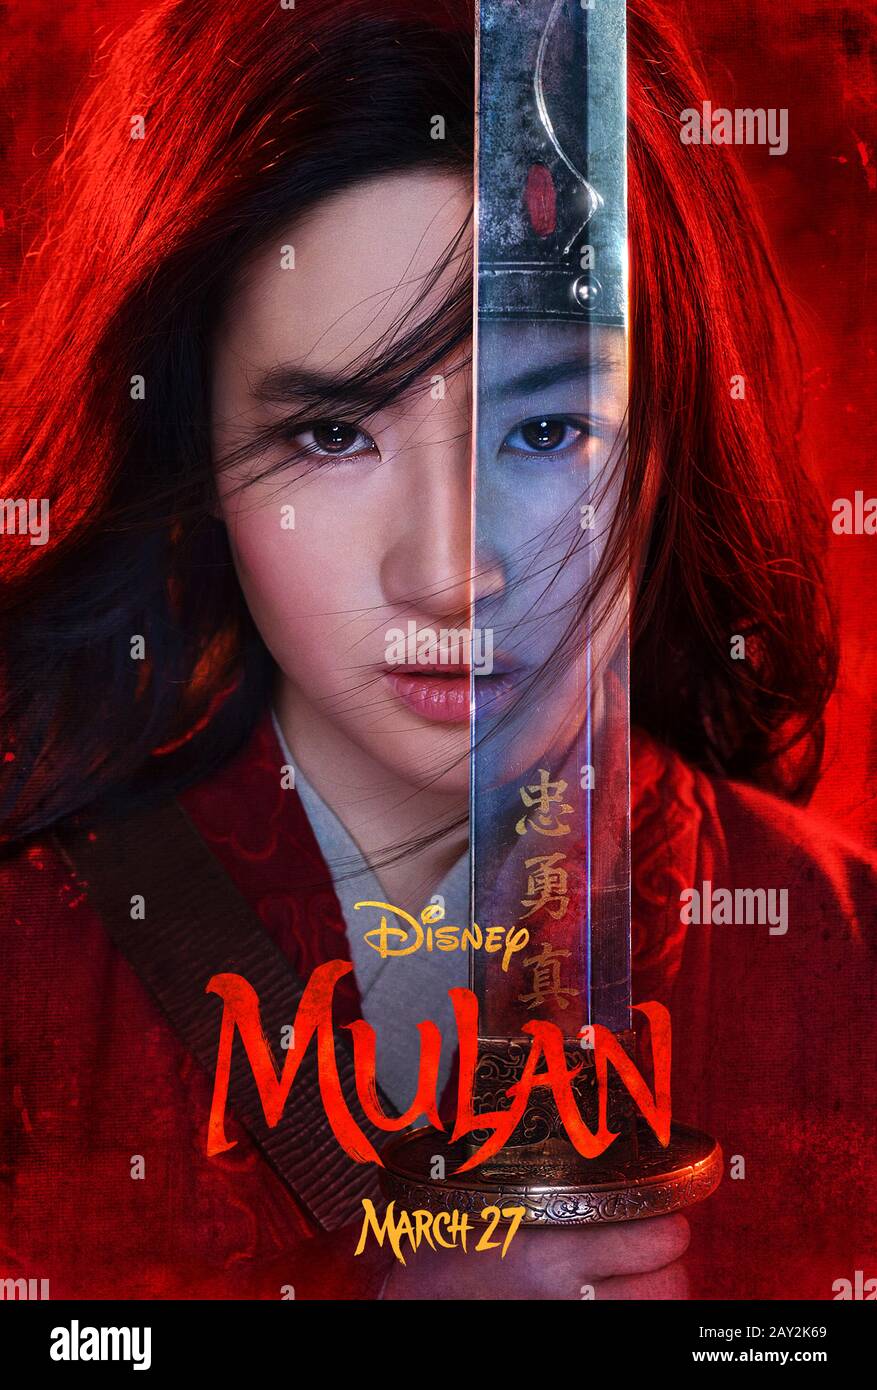 Mulan (2020) dirigida por Niki Caro y protagonizada por Yifei Liu, Donnie Yen, Jet Li y Li Gong. Acción en vivo reiniciar la animación de Disney de 1998 sobre una mujer China que se disfraza como un hombre para salvar a su padre. Foto de stock